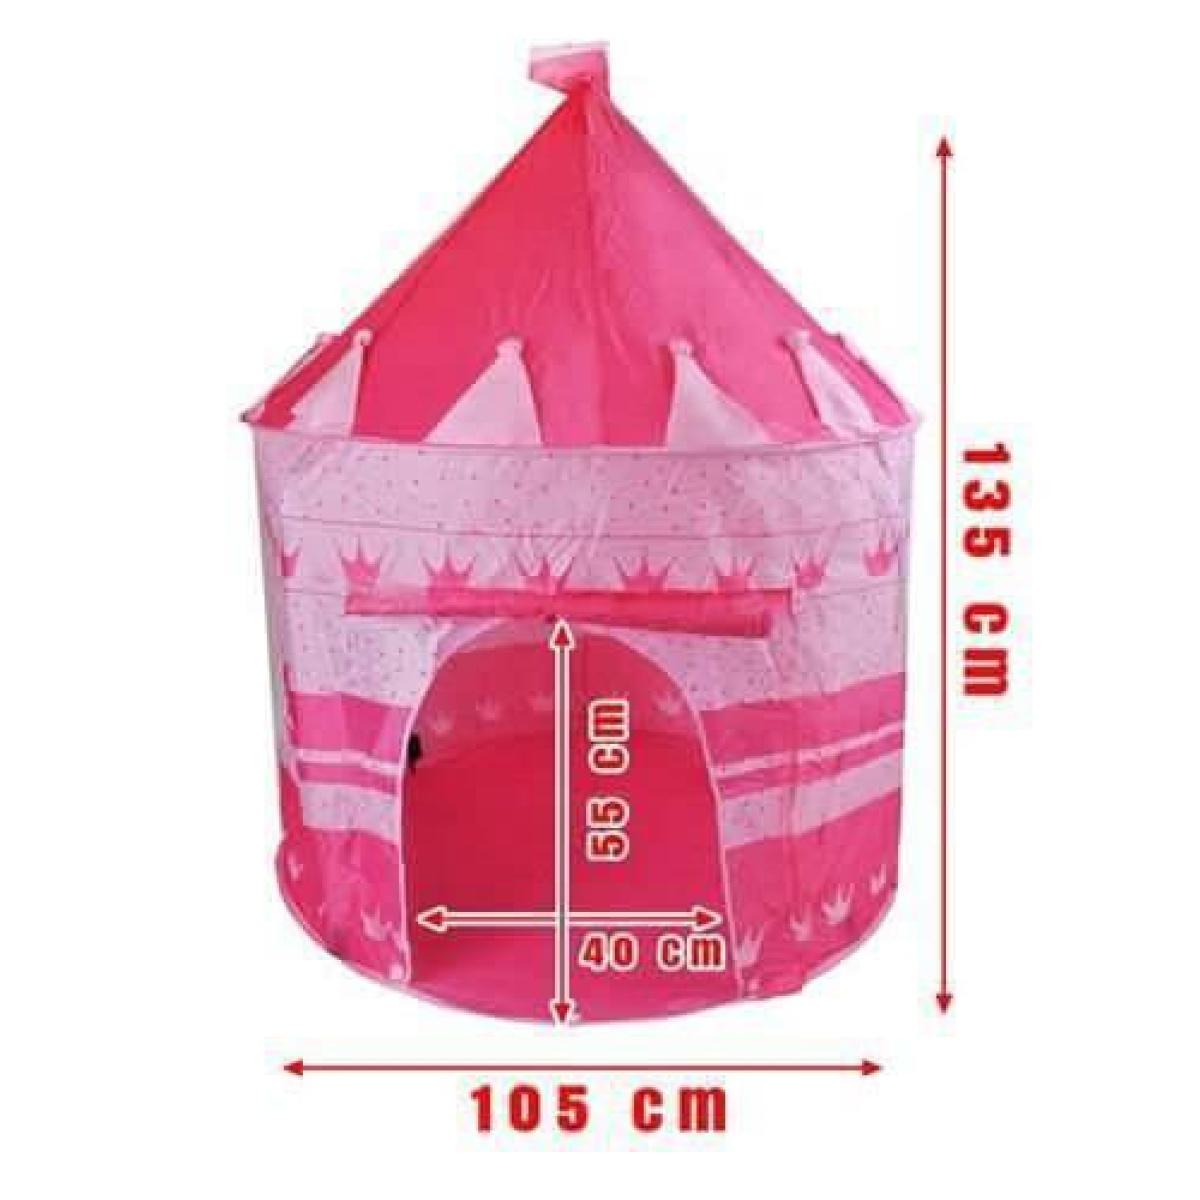 Παιδική Σκηνή Pop Up Tent, σε σχήμα κάστρου με ύψος 135cm σε ροζ χρώμα